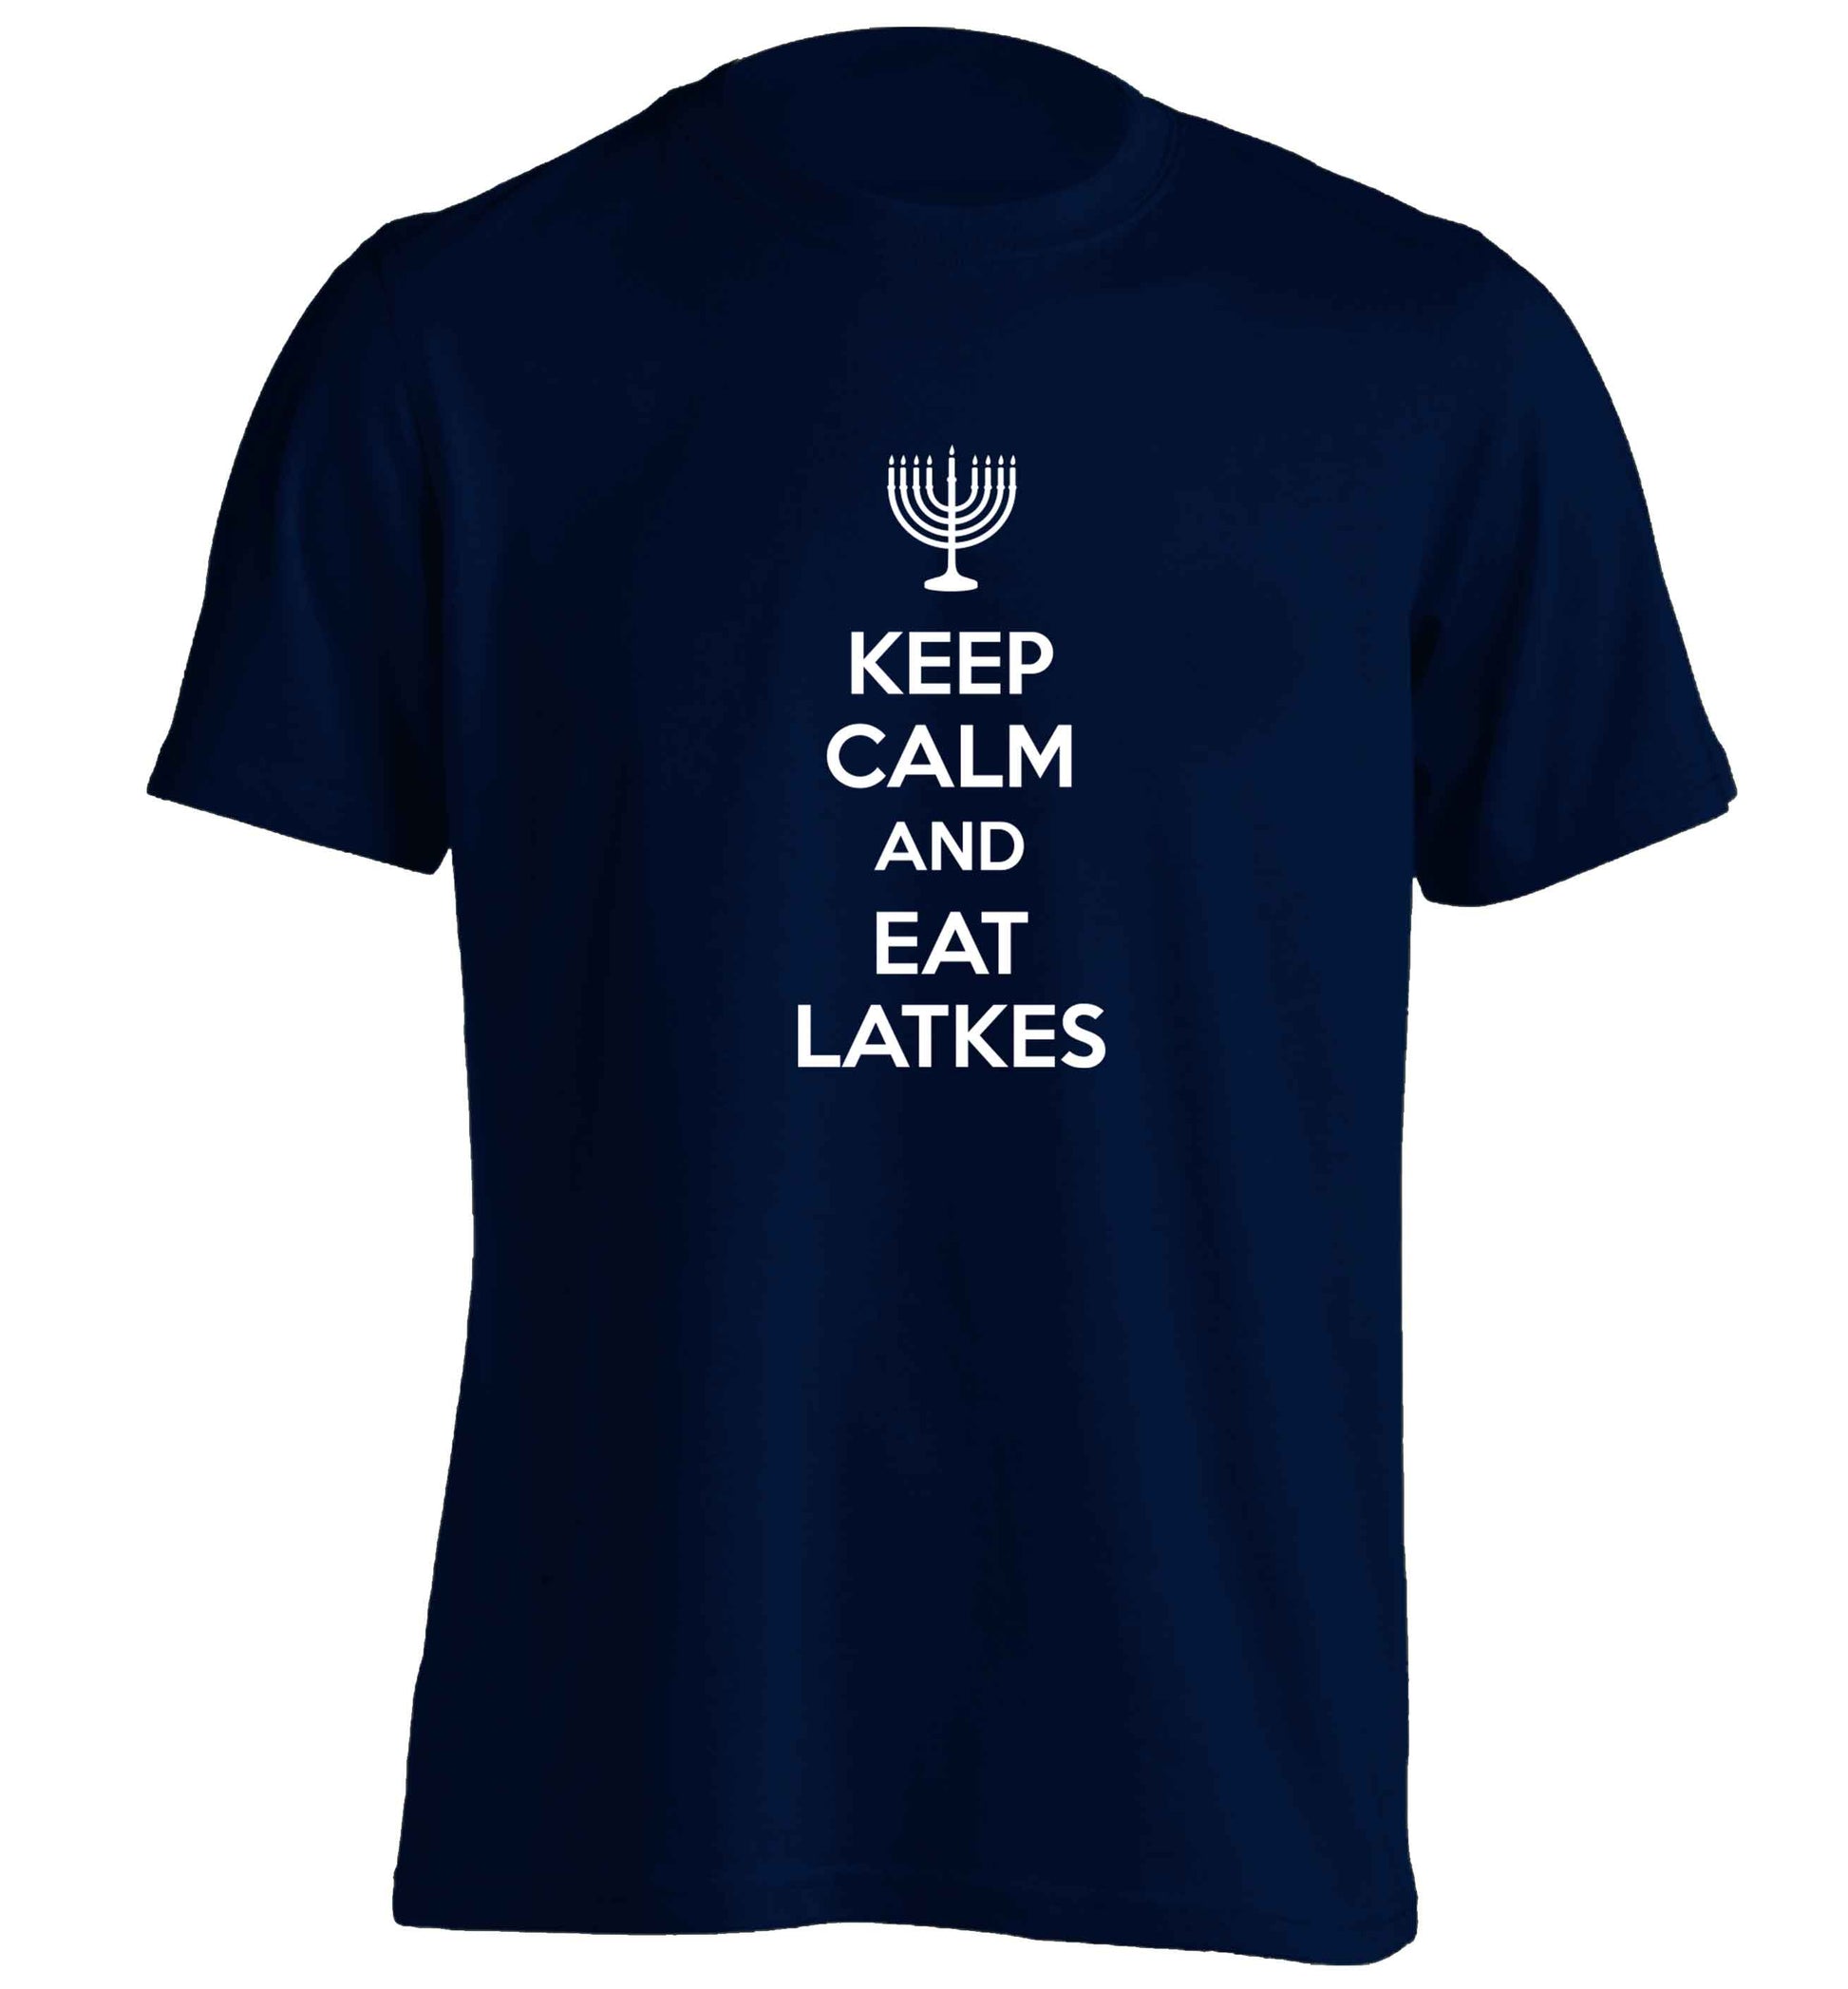 Keep calm and eat latkes adults unisex navy Tshirt 2XL